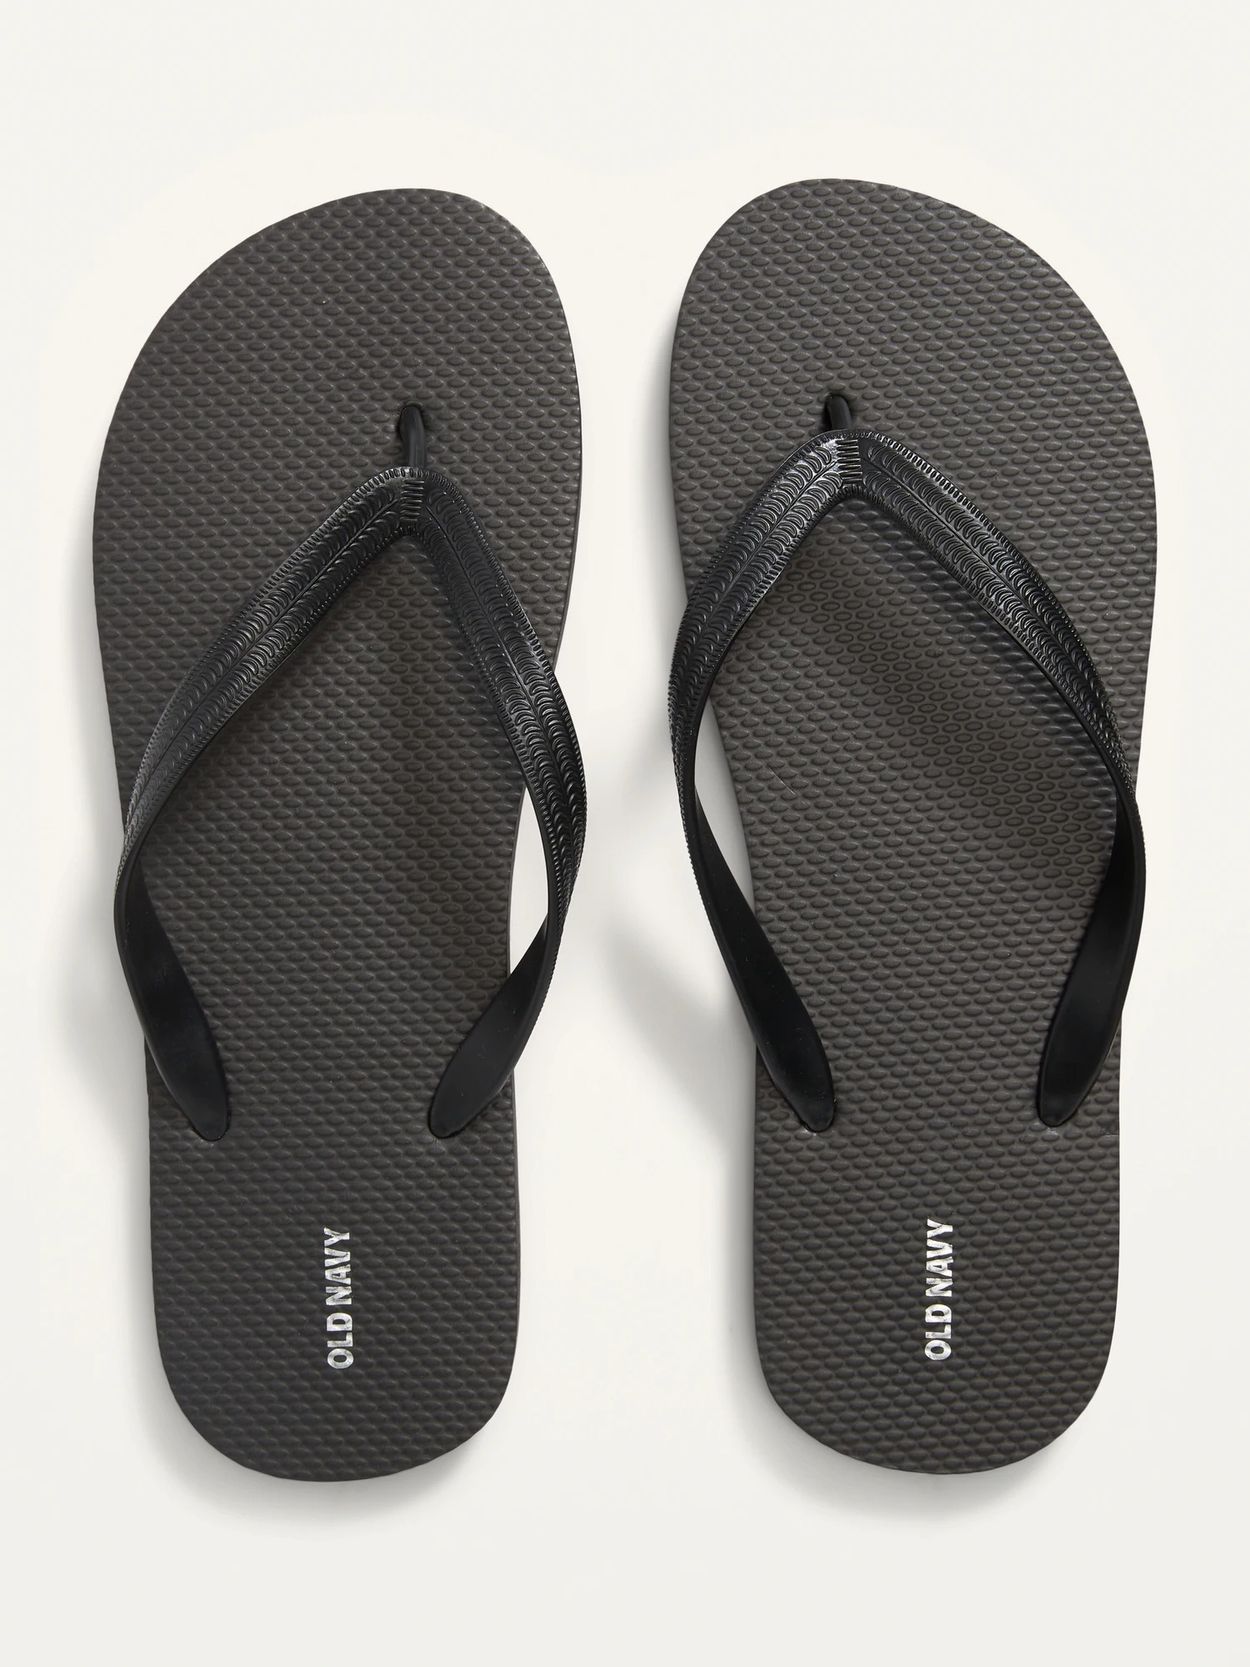 sandals for men under 500 Off 60%